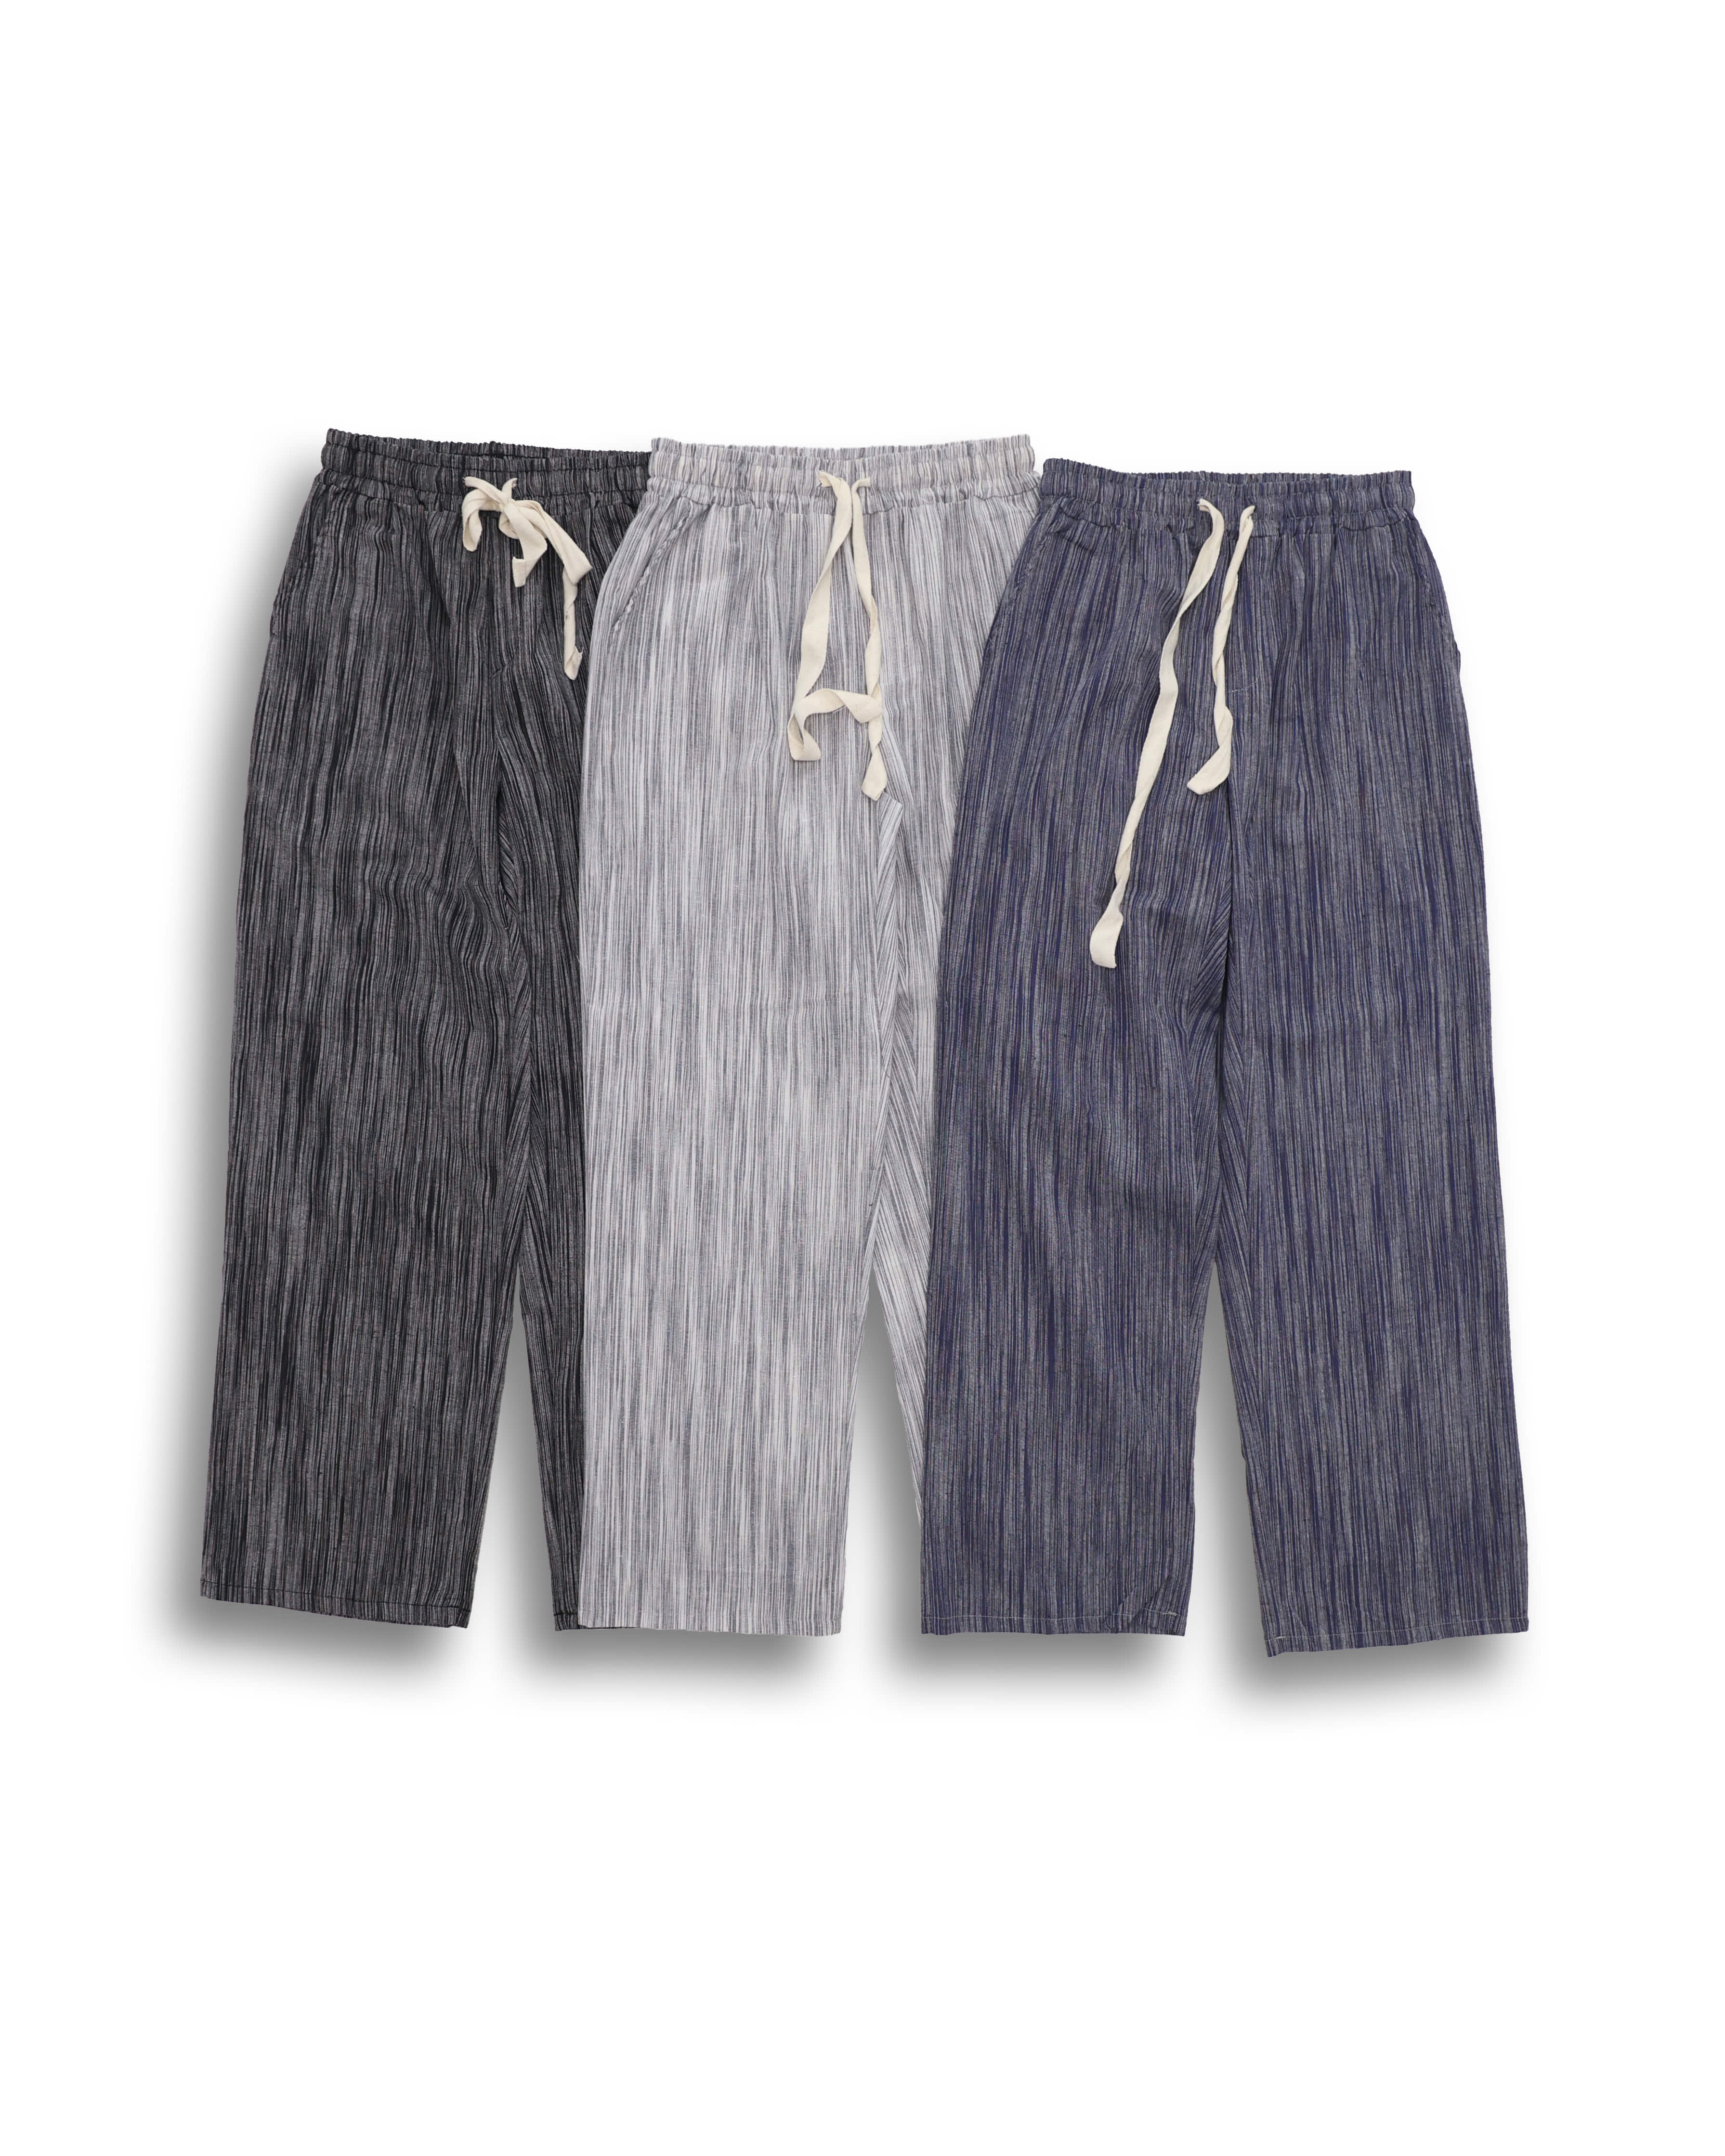 GROSS Linen Stripe Wide Pleats Pants (Black/Gray/Blue)